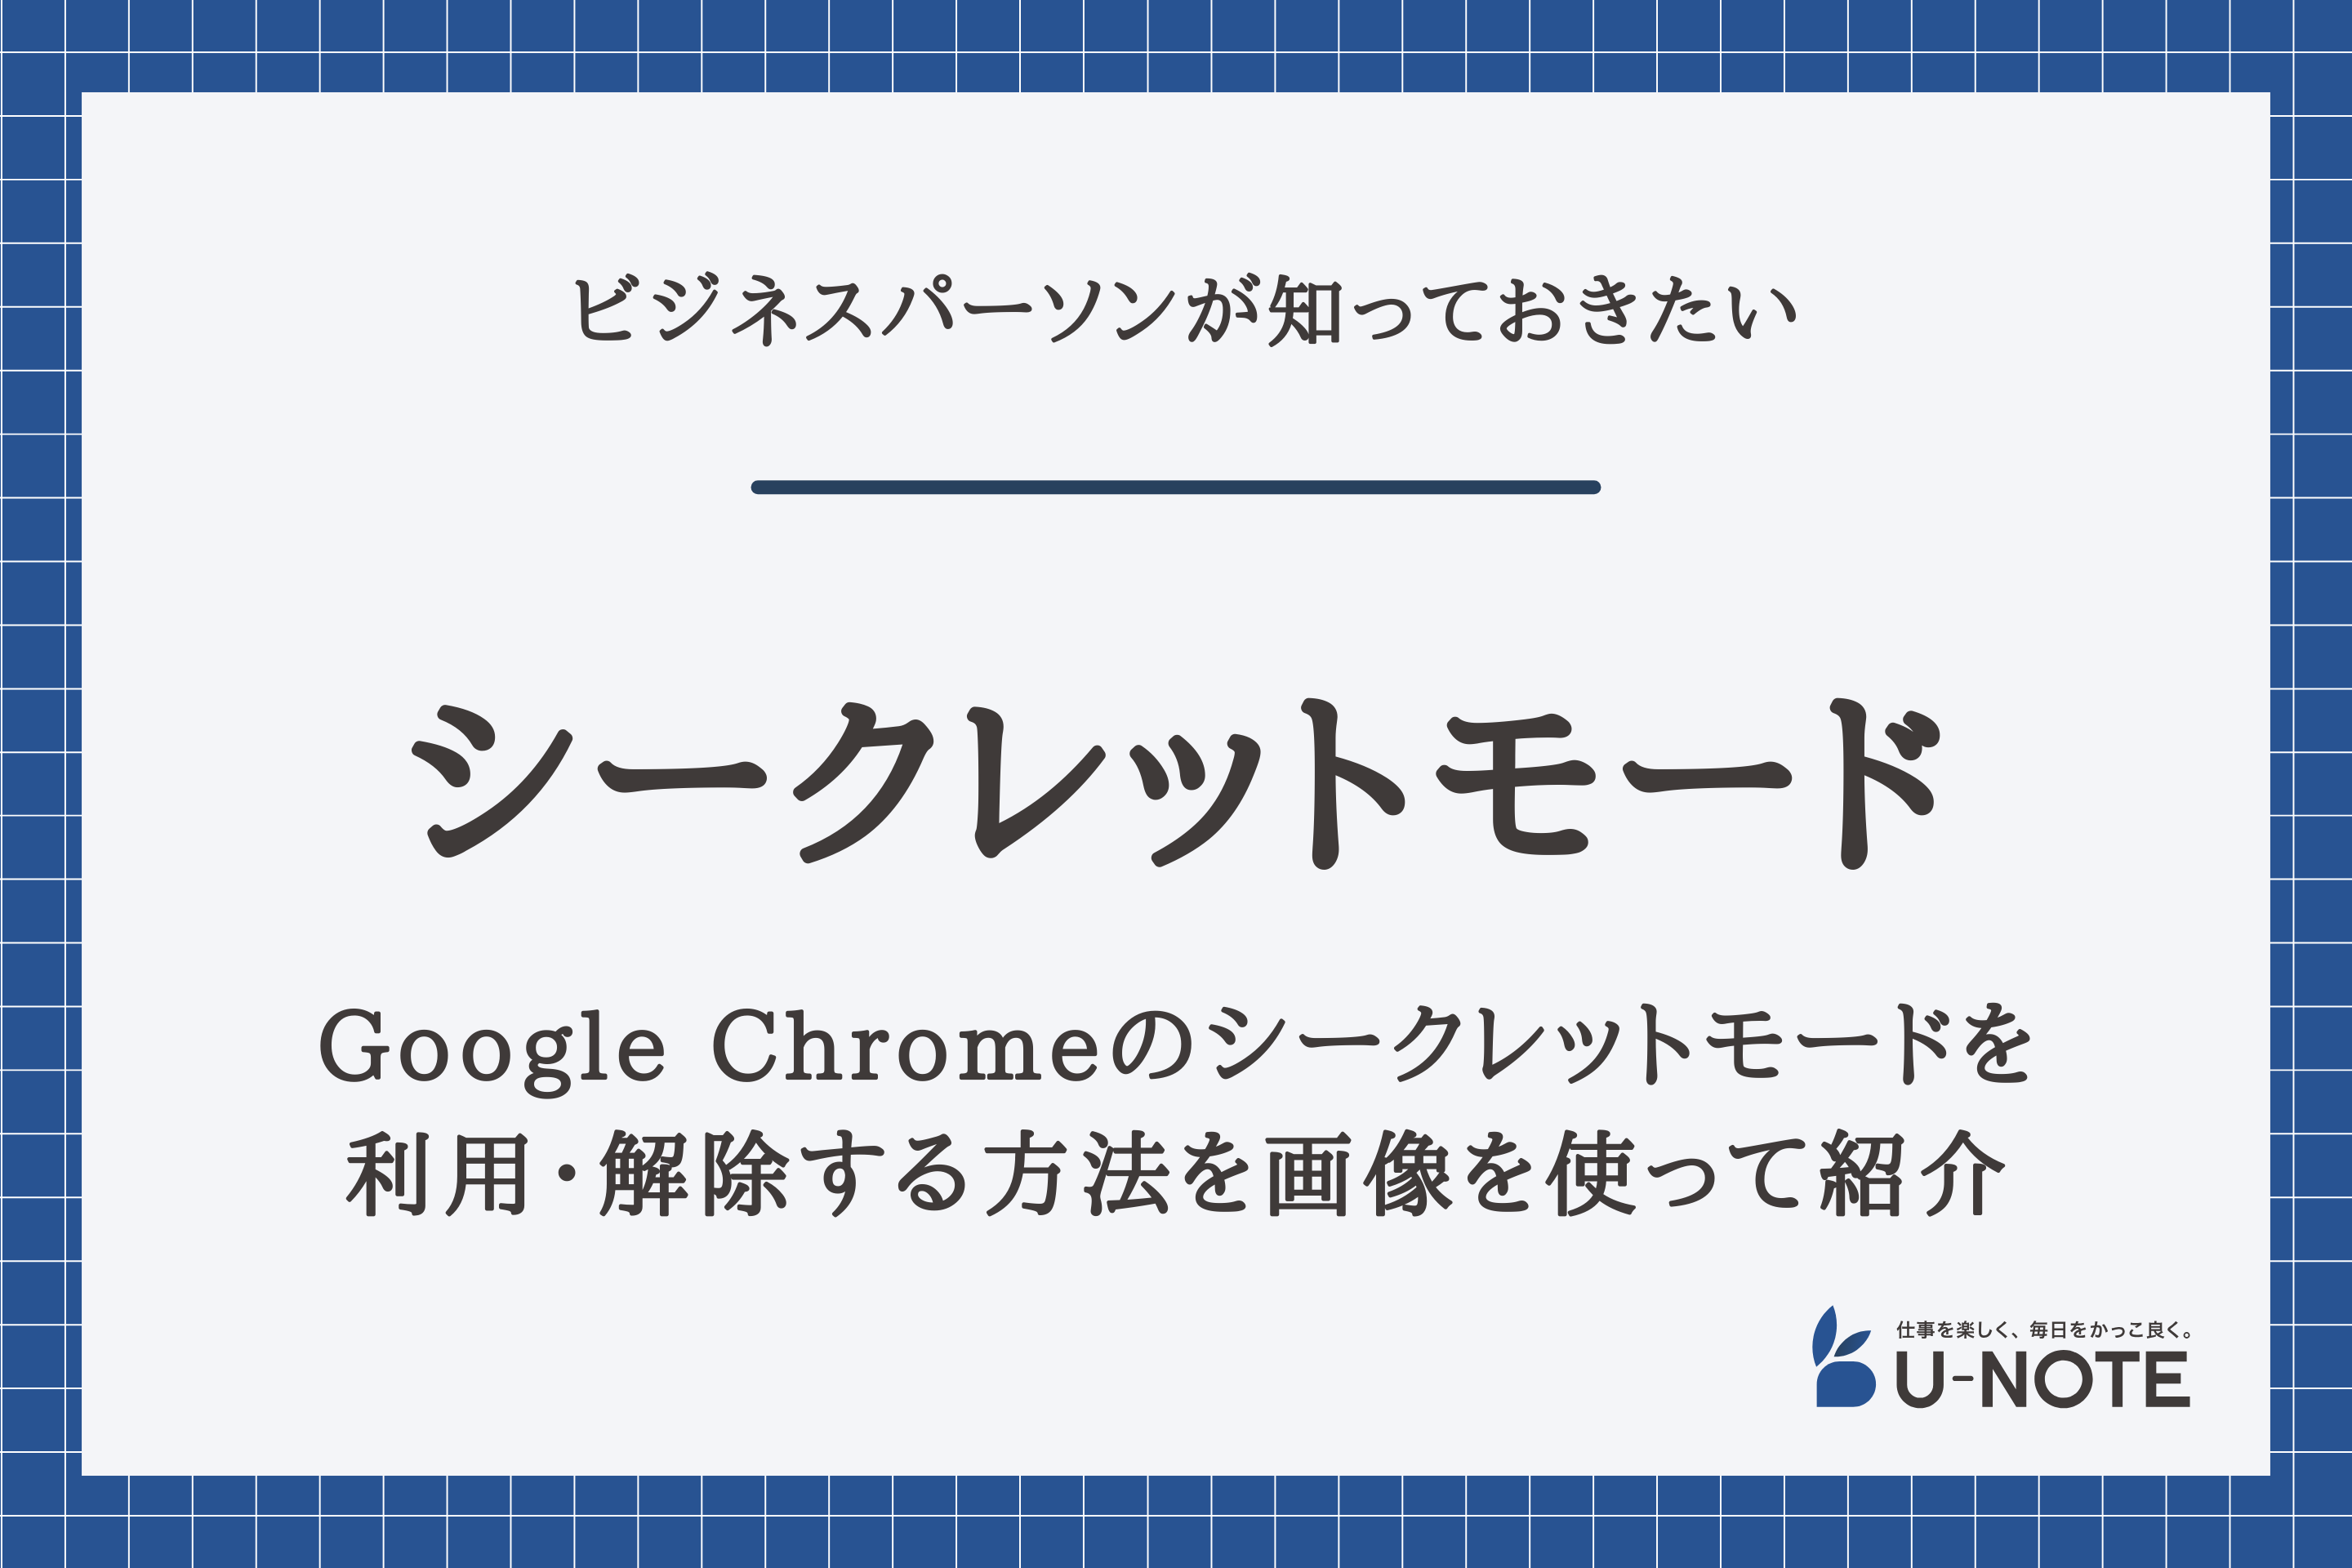 Google Chromeのシークレットモードを利用・解除する方法を画像を使って紹介